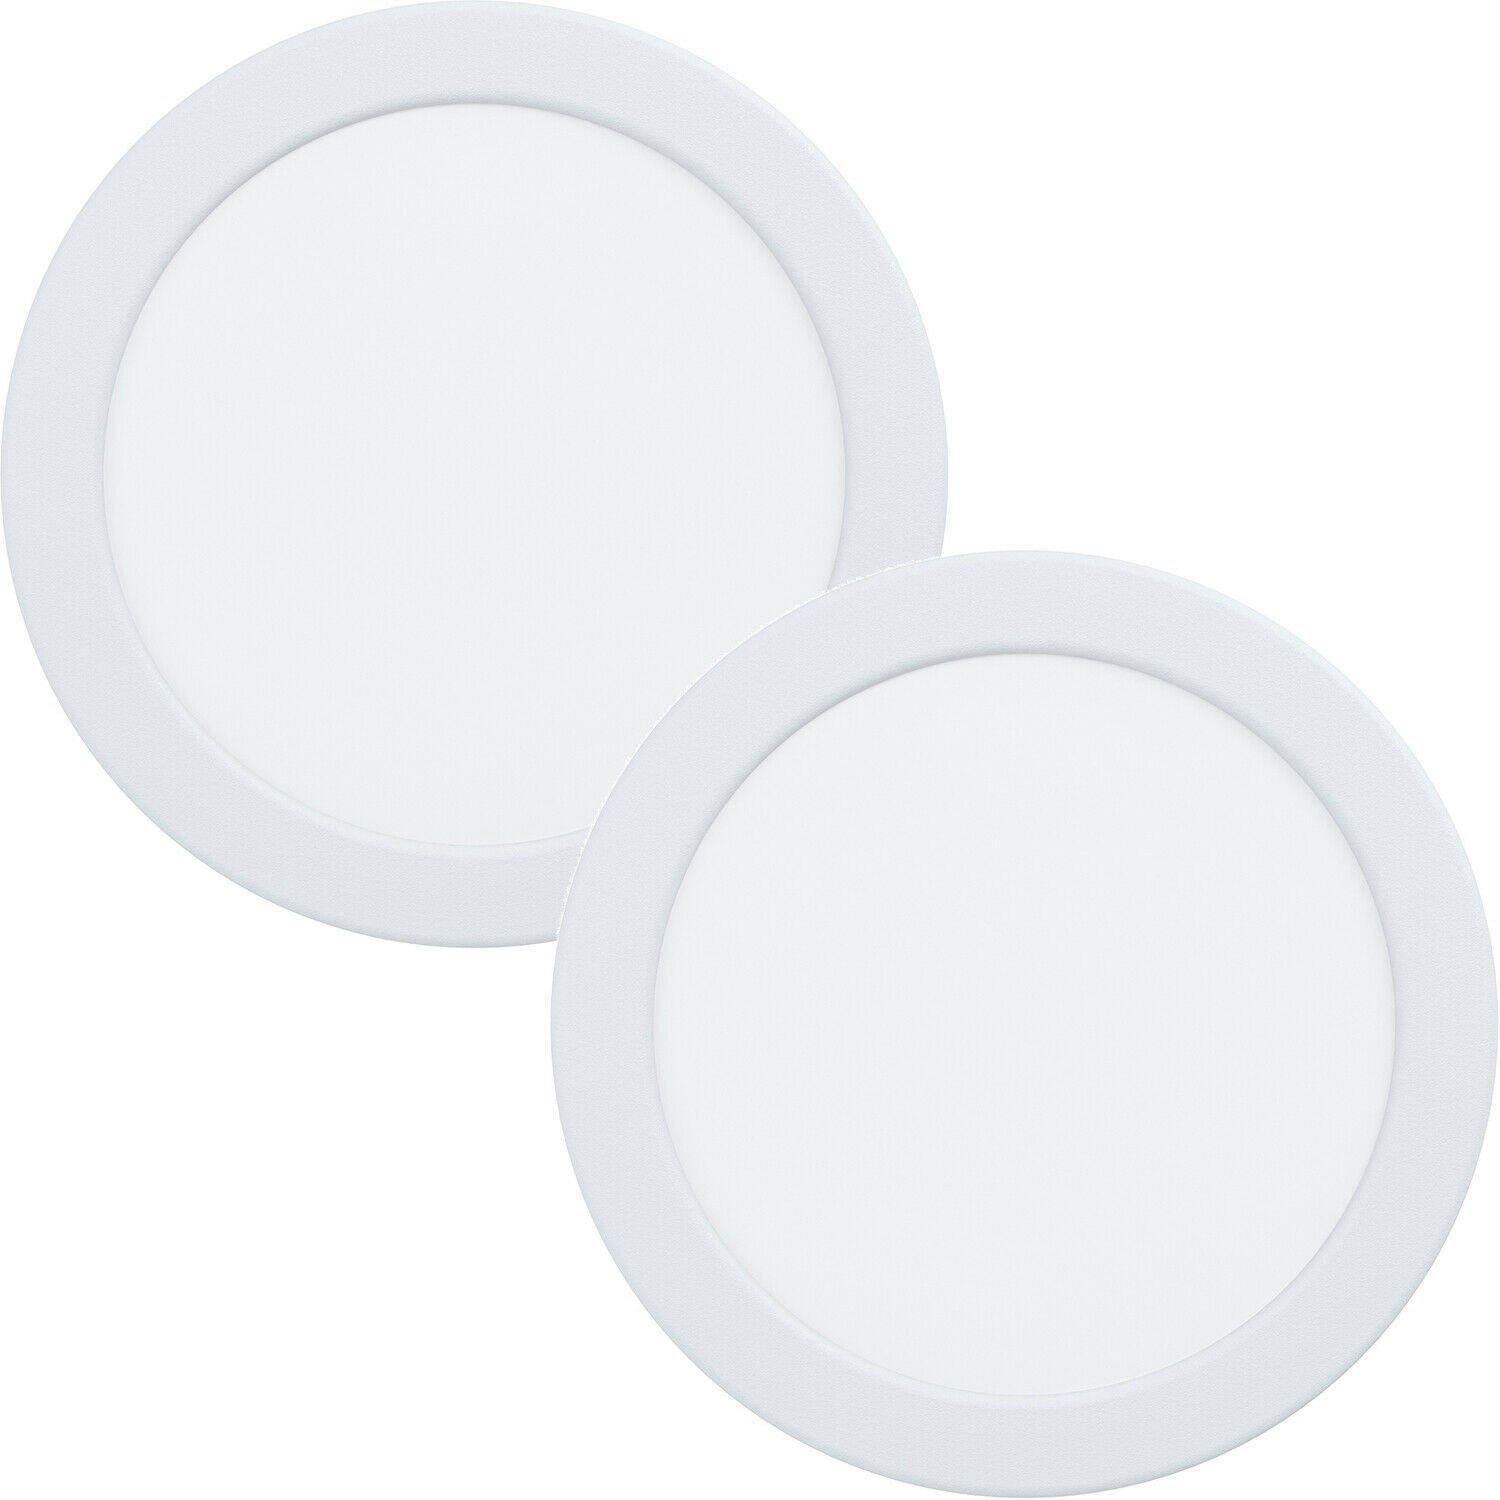 2 PACK Wall / Ceiling Flush Downlight White Round Spotlight 10.5W LED 4000K